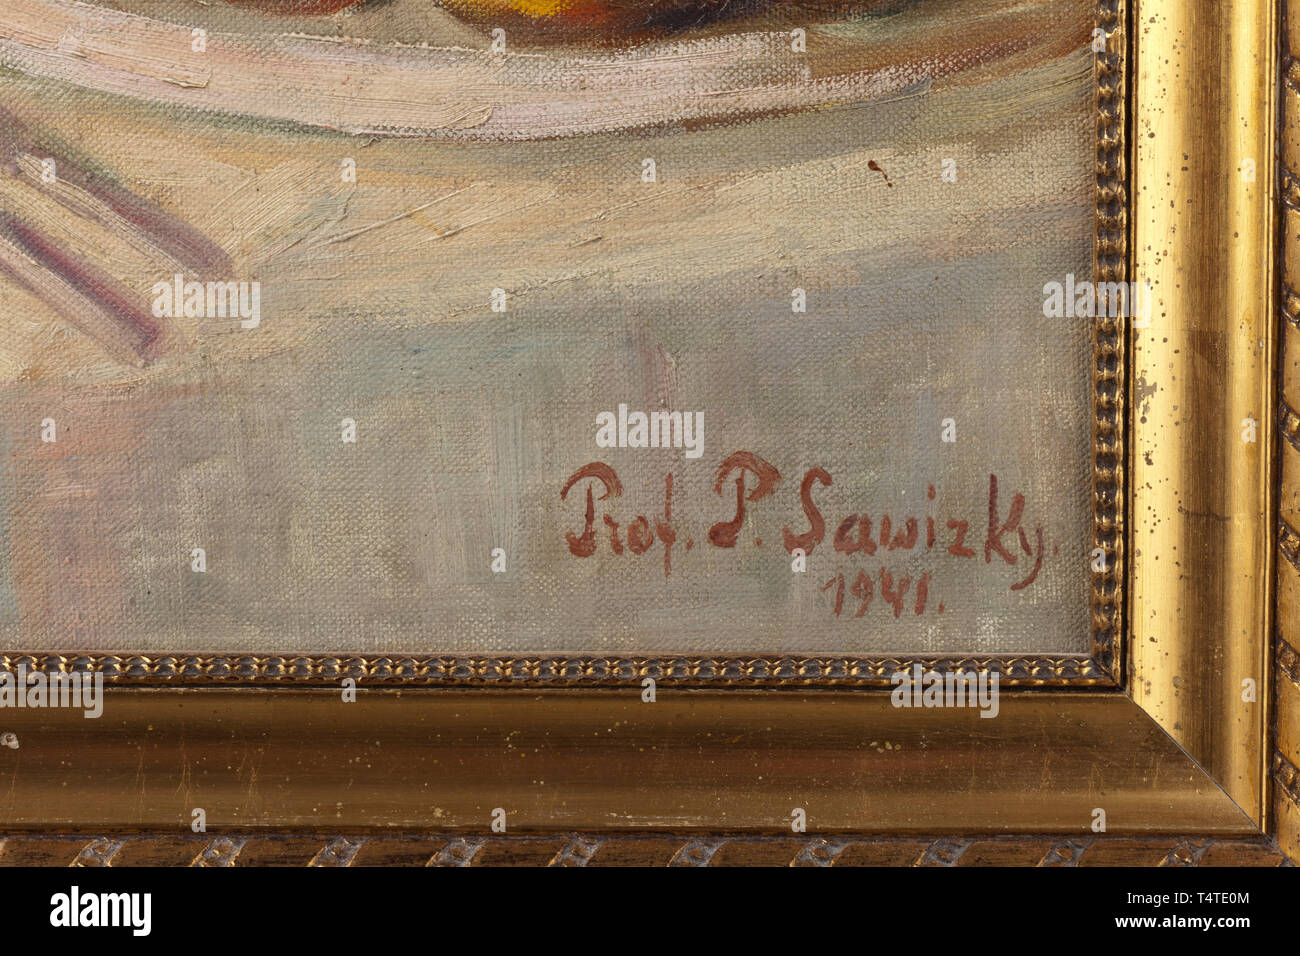 Pavel protoiereus Olimpievitsh Savitsky (1881 - 1956) - ein Ostern noch leben, Öl auf Leinwand, Rechts unten signiert und datiert "Prot. S. Sawizky 1941'. Die Tabelle prunkvoll mit Ostern Kuchen, Ostereier, Blumen, Getränke und ein Spanferkel. In einem vergoldeten Holzrahmen. Dimension der Malerei 60 x 80 cm. Dimension der Rahmen 71 x 91 cm. Pavel protoiereus Olimpievitsh Savitsky war ein russischer Maler und Bildhauer, sowie eine berühmte Orthodoxe Kirche Führer während der Emigration. Er studierte unter I.P. Trutnev am Vilensky Kunstakademie und Chu, Additional-Rights - Clearance-Info - Not-Available Stockfoto